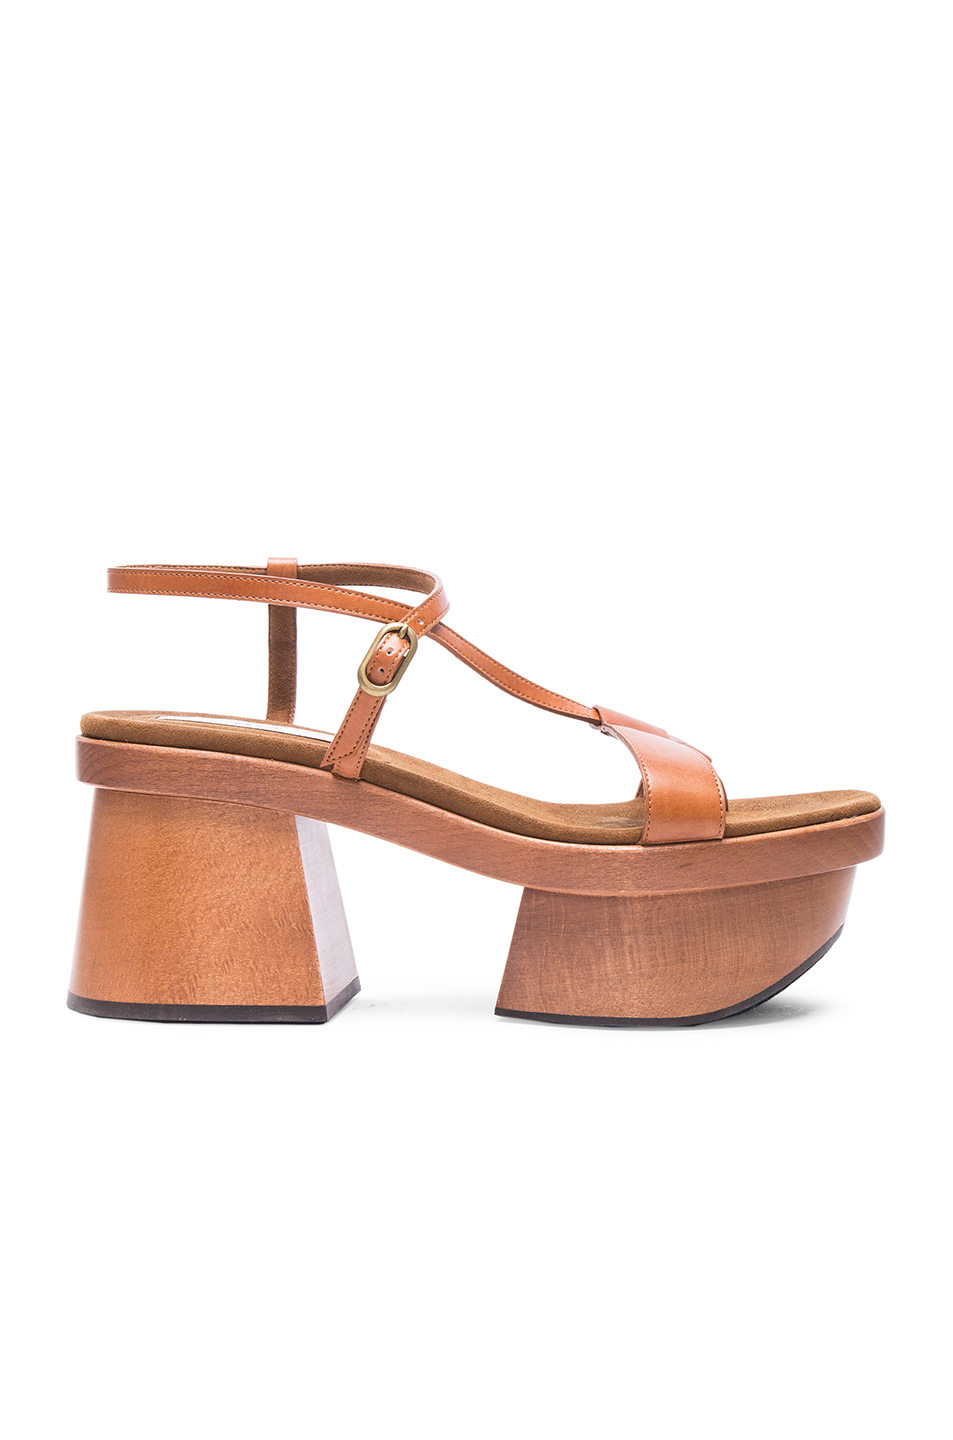 Lyst - Stella Mccartney Altea Sandals in Brown